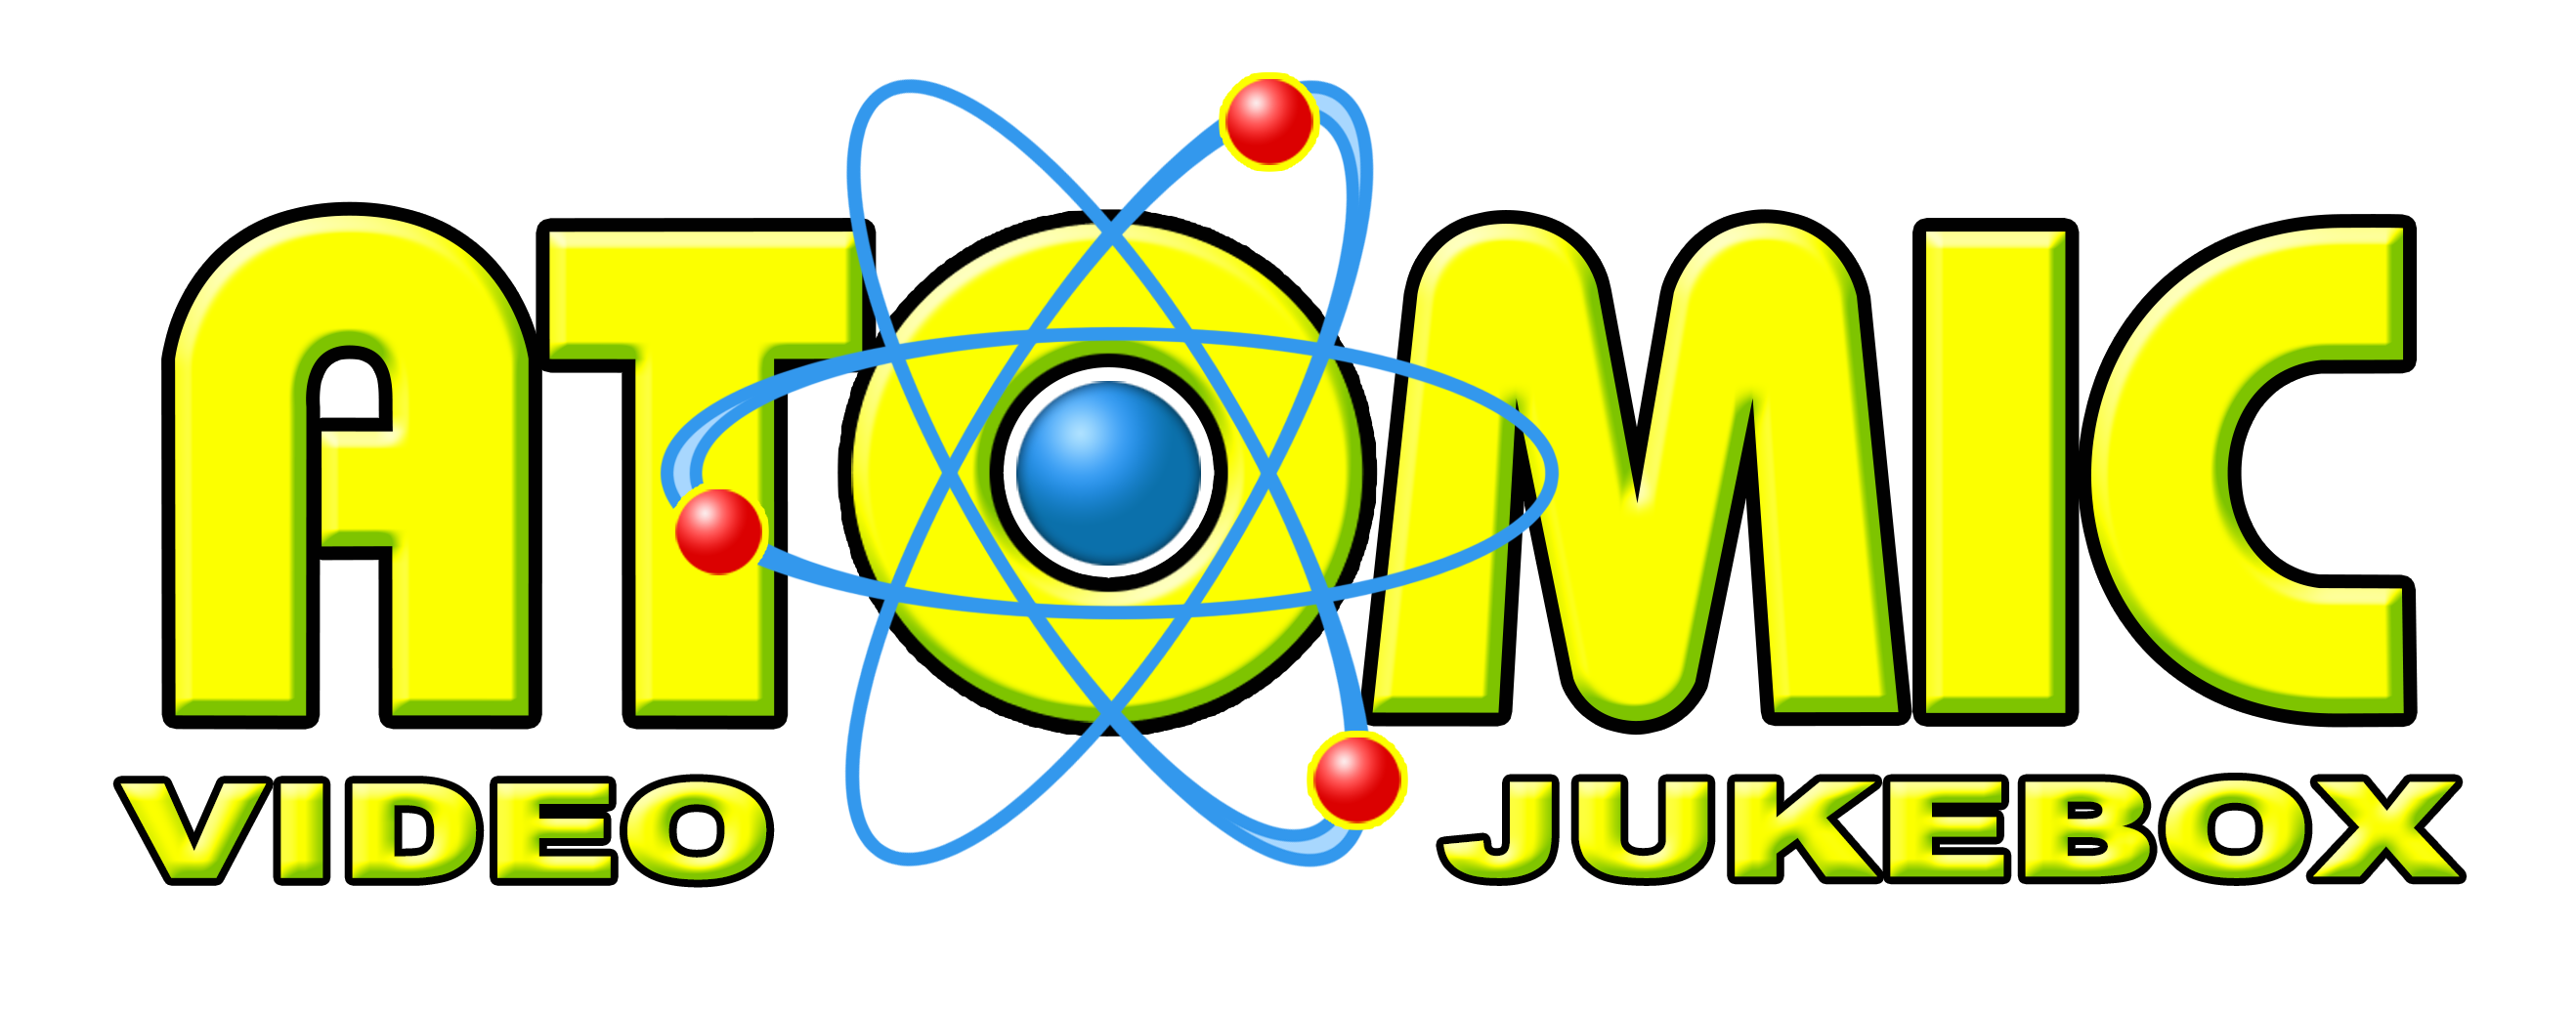 Atomic Video Jukebox